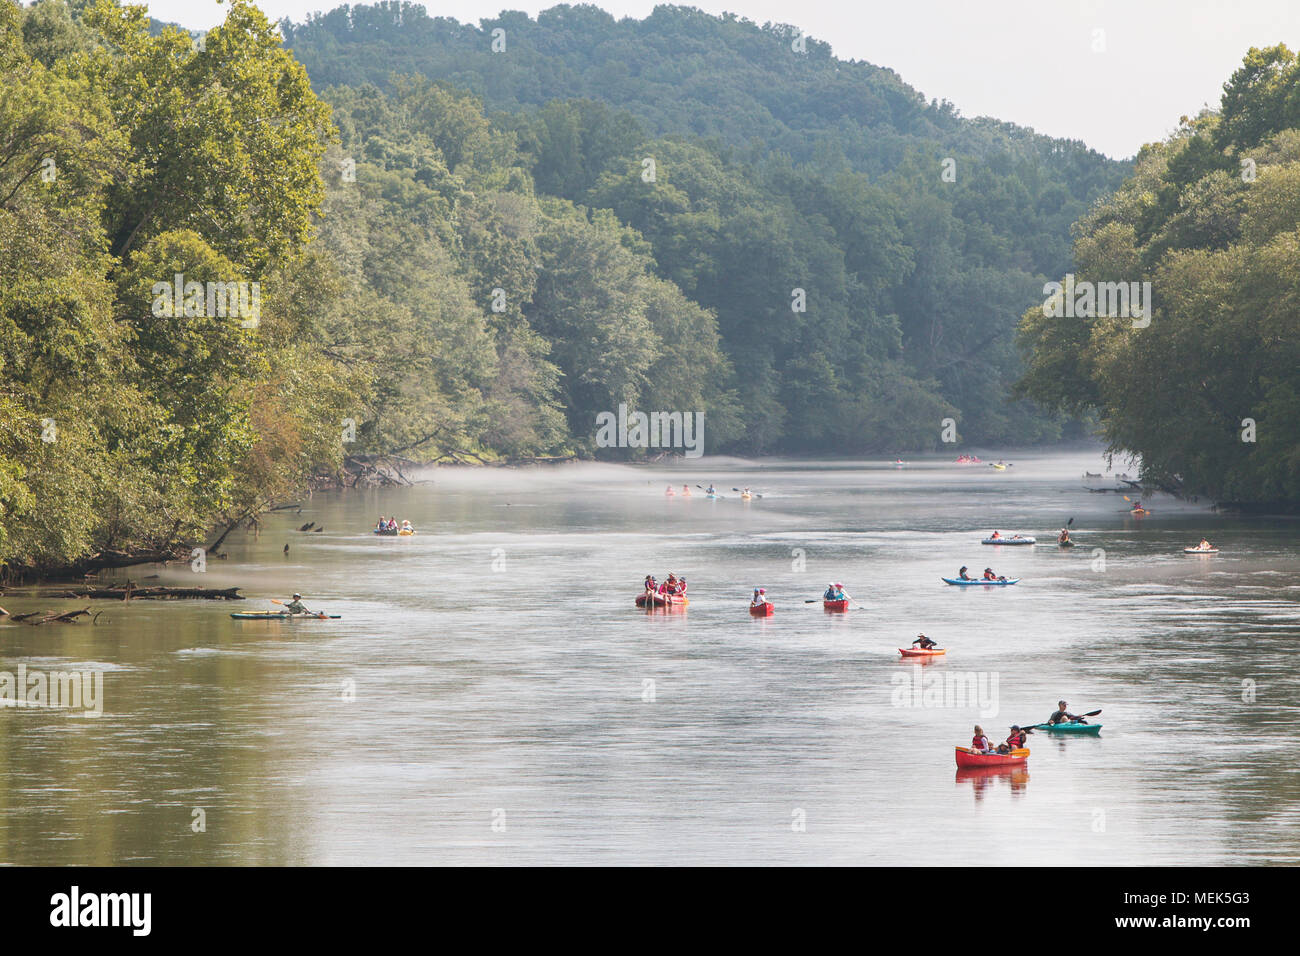 Atlanta, GA, USA - 25 juillet 2015 : Les gens raft, kayak et canoë sur la rivière Chattahoochee sur une chaude journée d'été le 25 juillet 2015 à Atlanta, GA. Banque D'Images